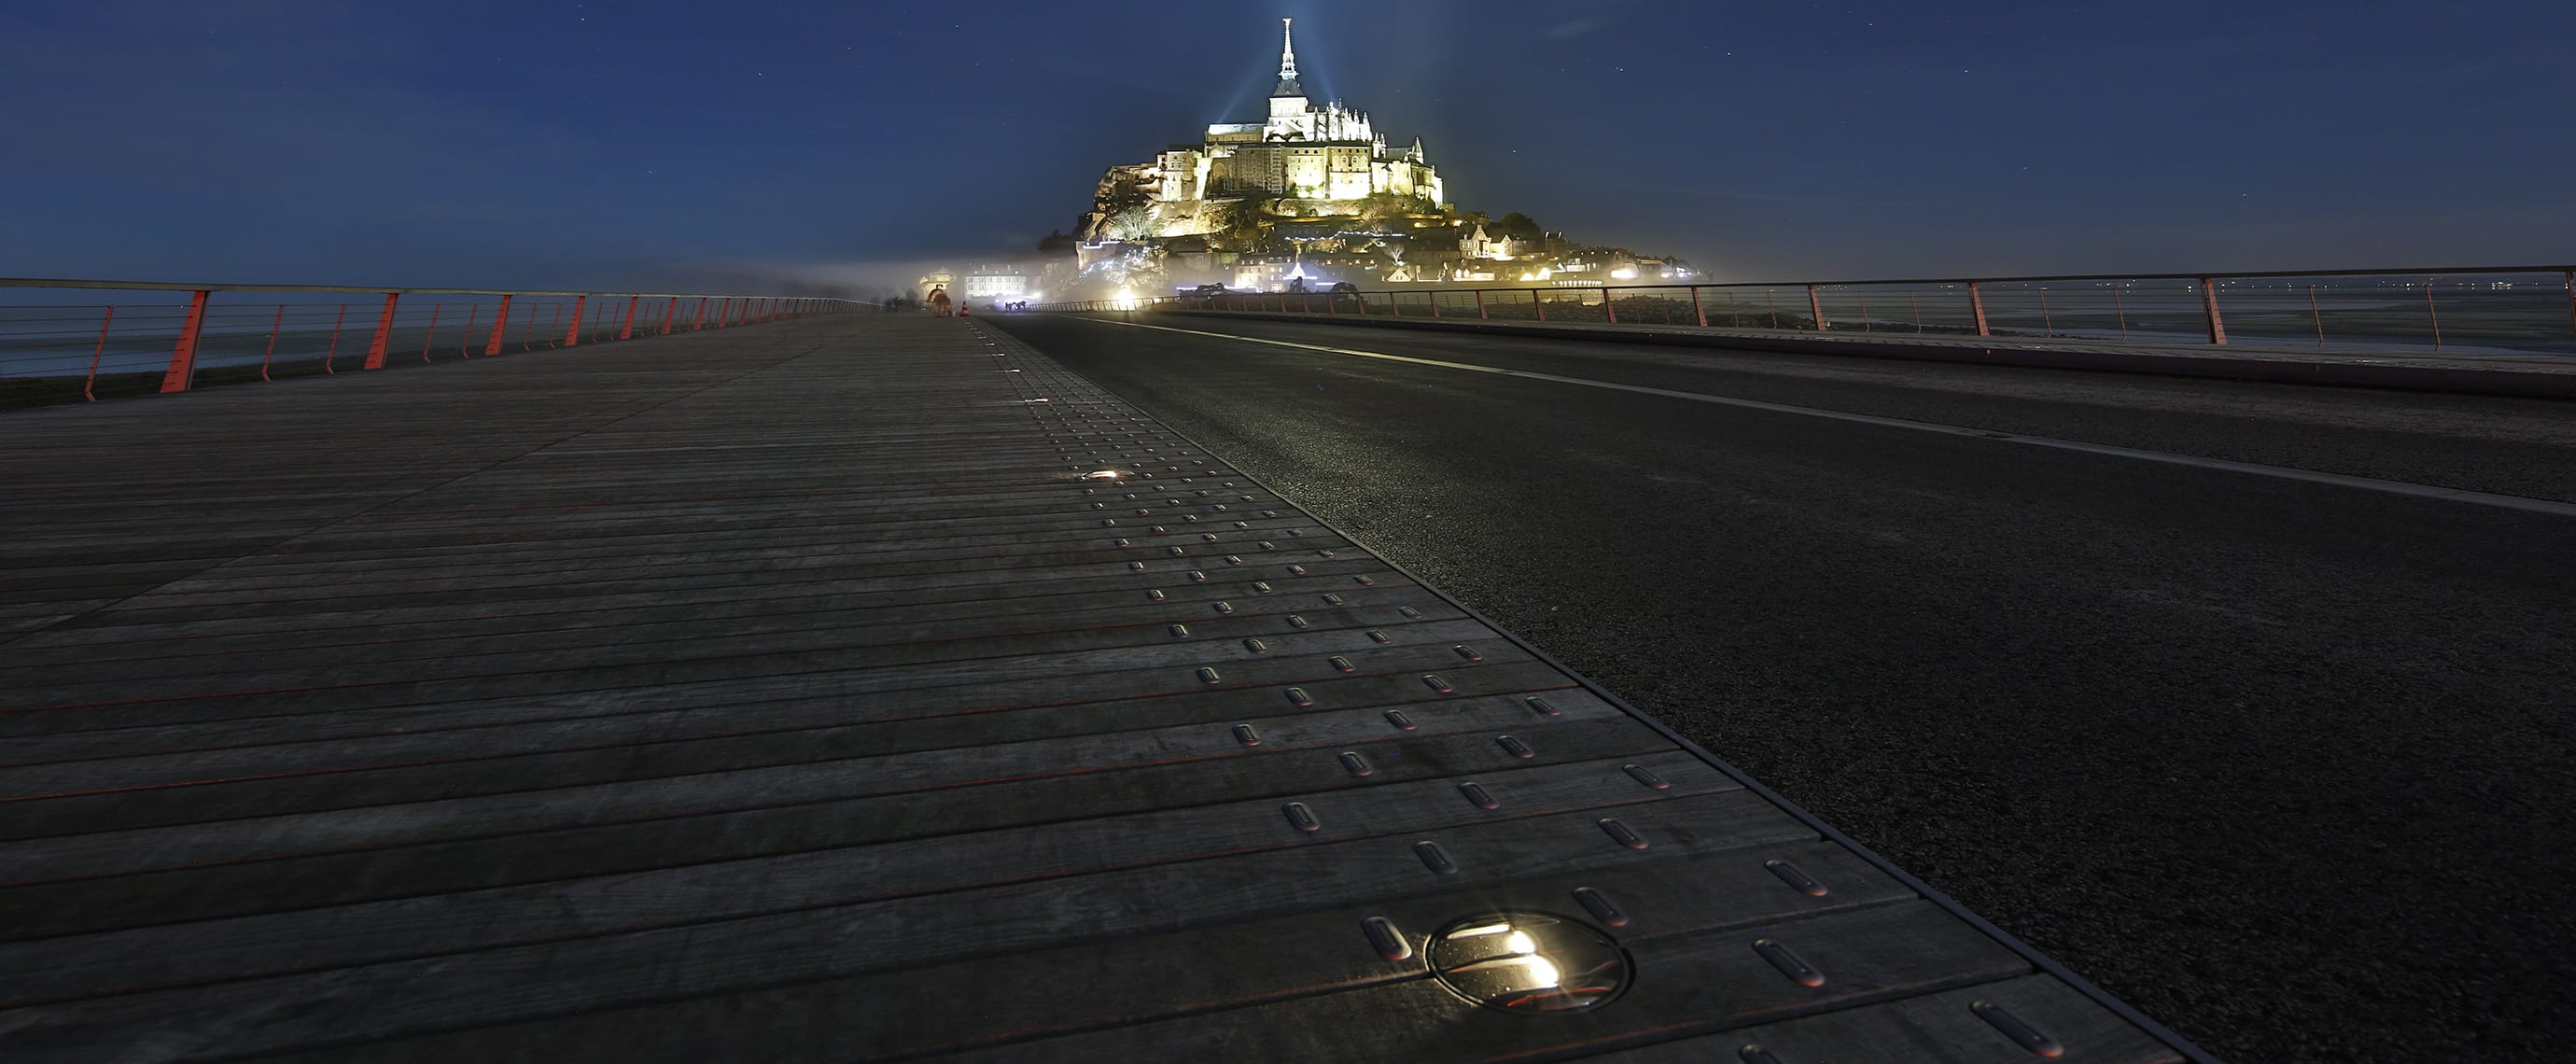 Signalisation LED de sécurité du Mont Saint Michel : ECO-845 Eco-Innov